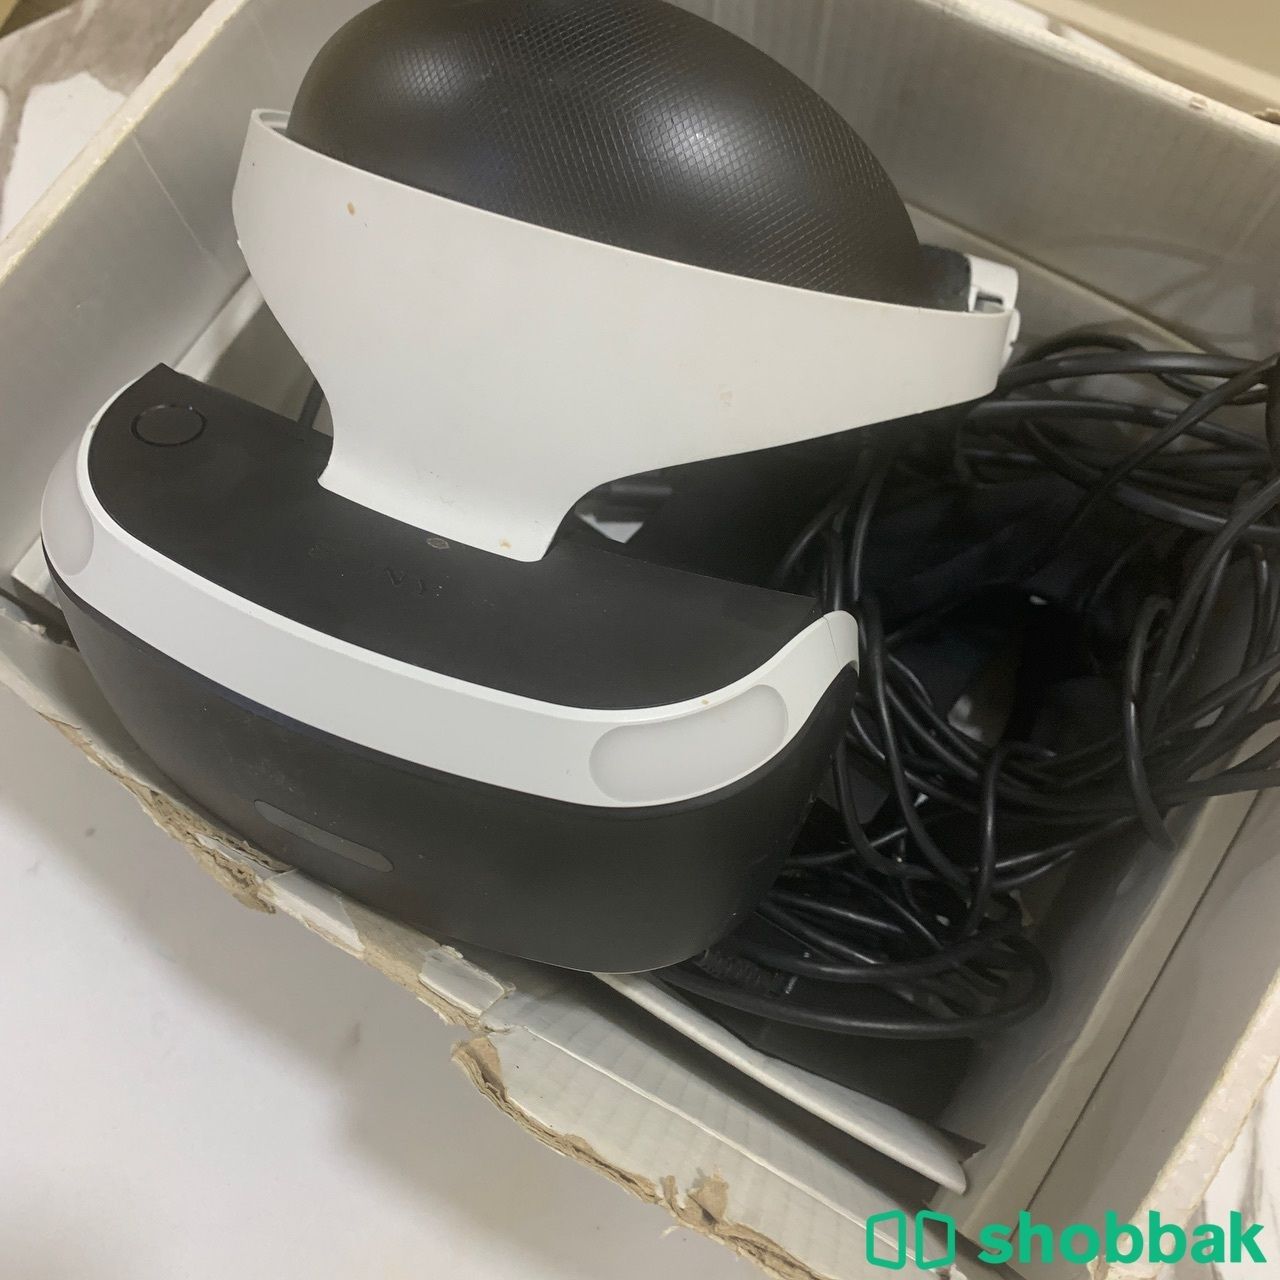   النظارة الواقع الافتراضي / SONY VR  Shobbak Saudi Arabia